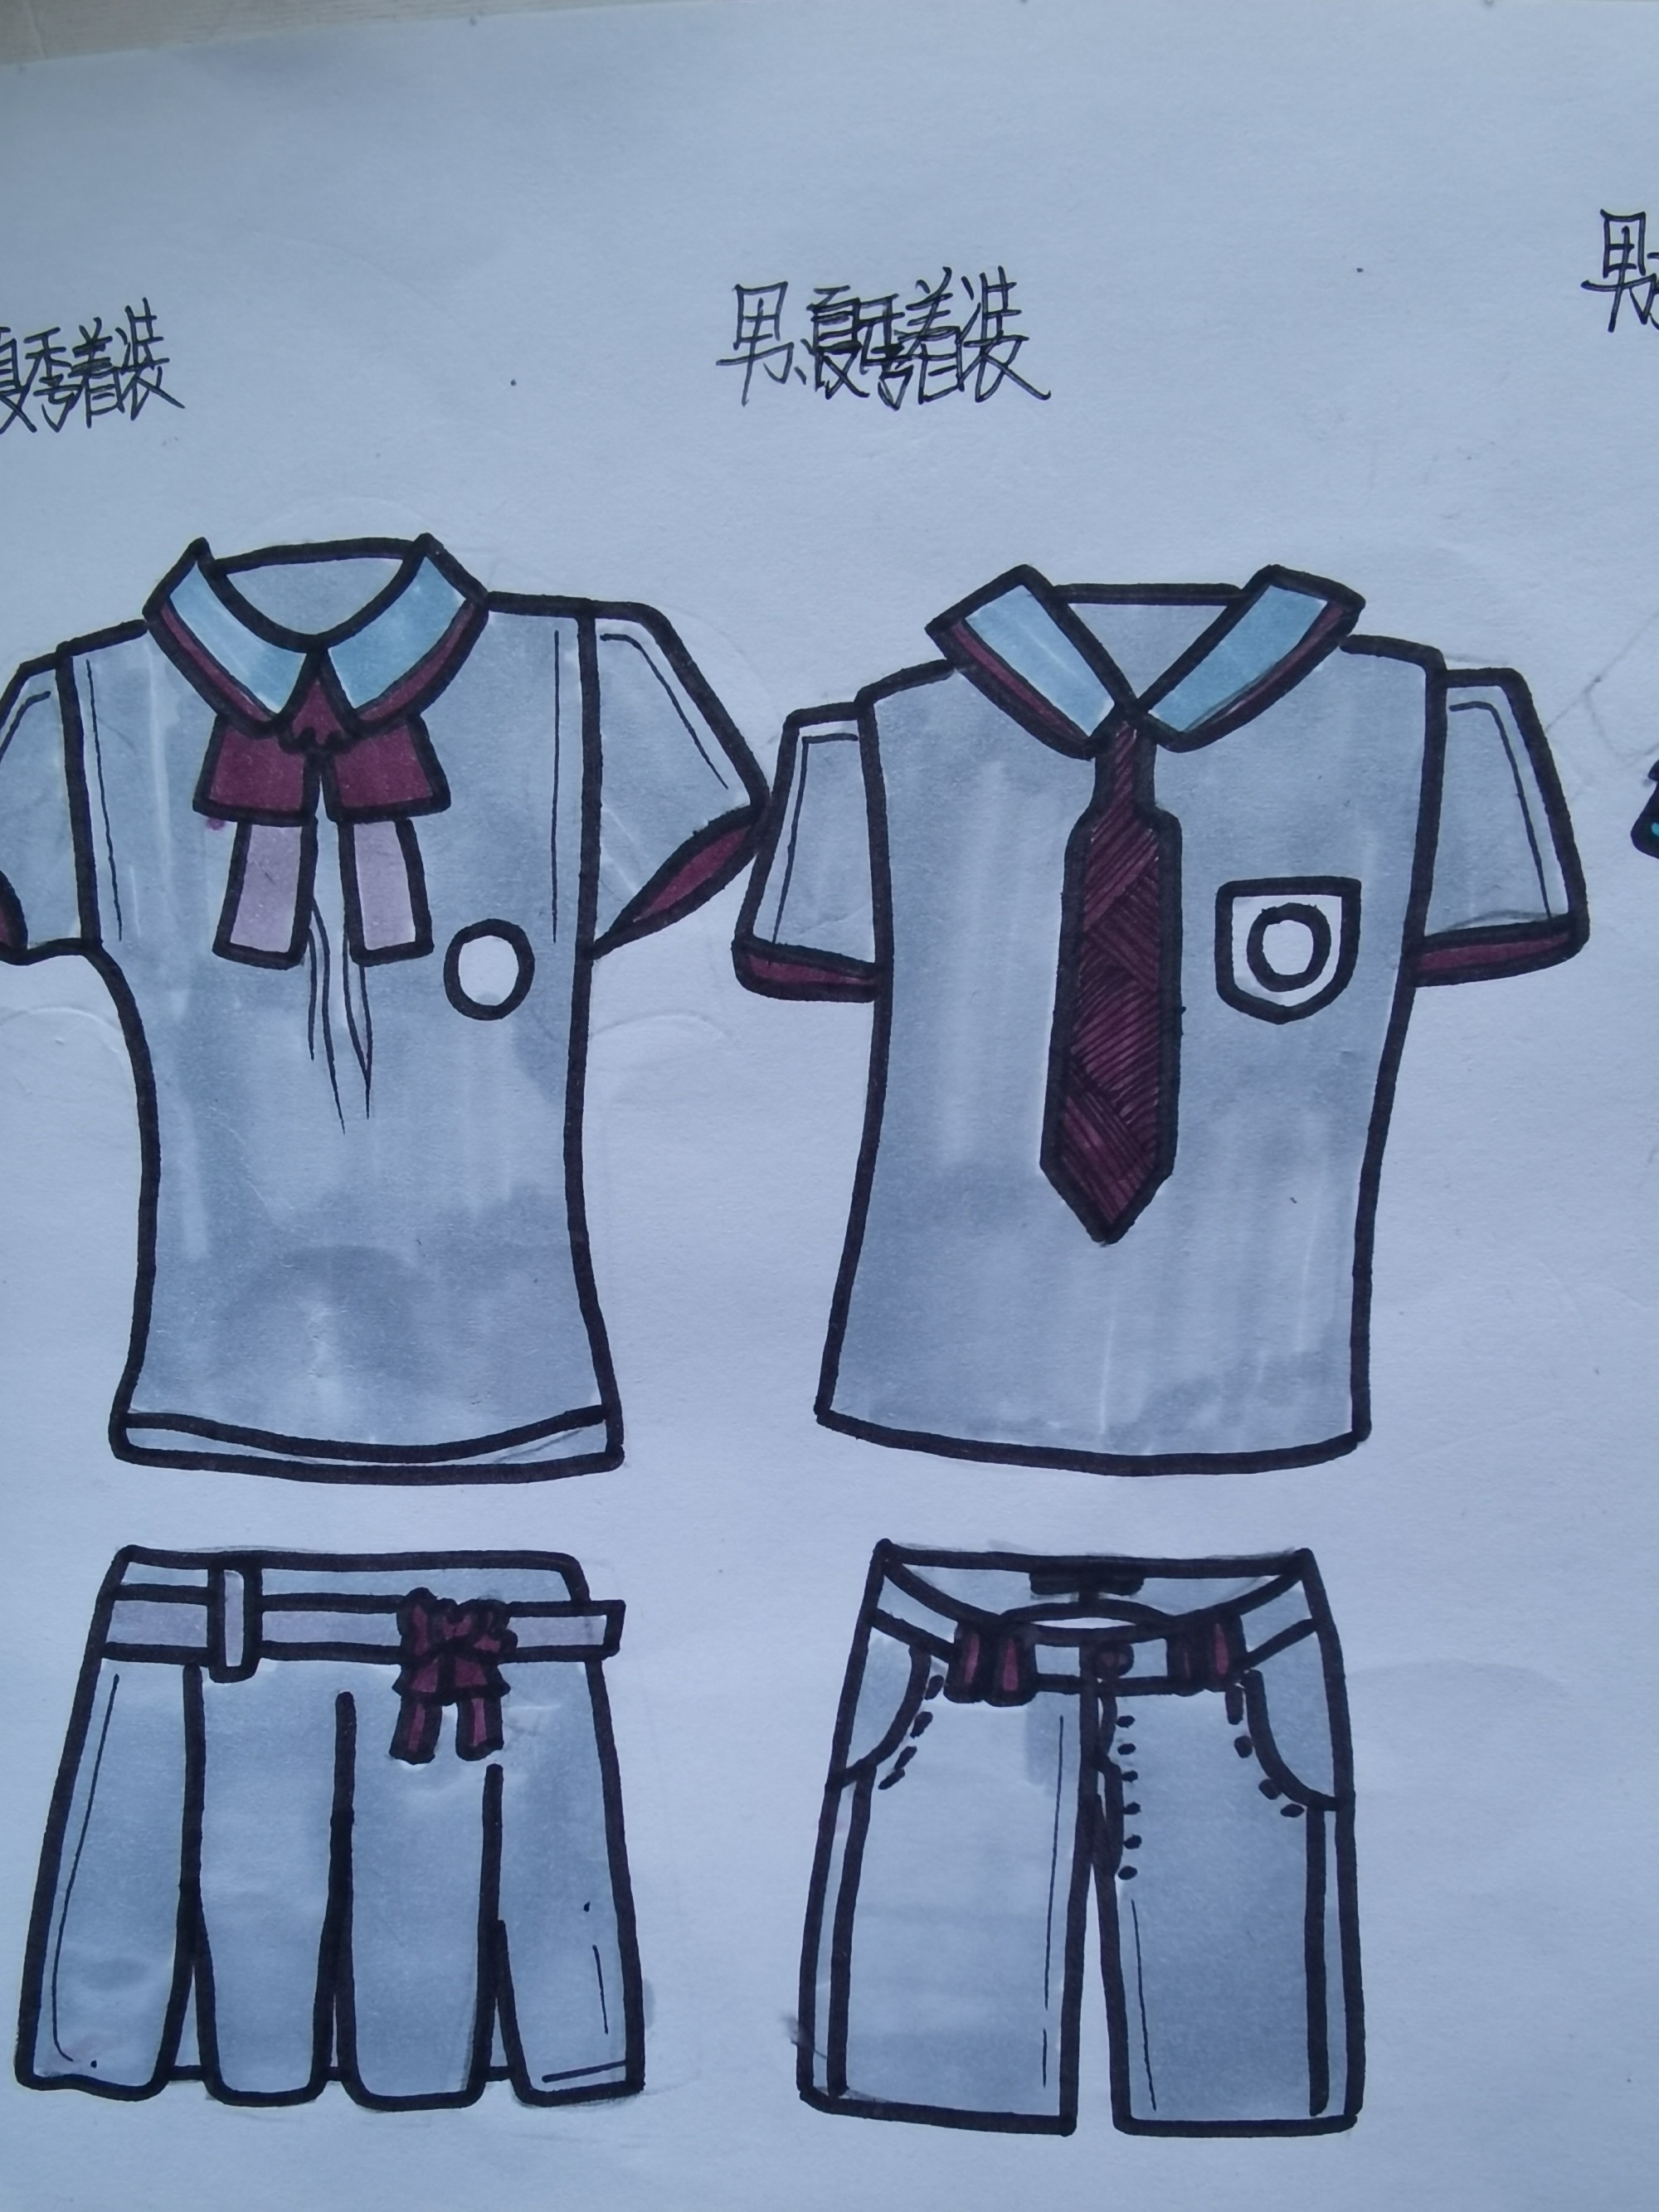 3、校服設計:怎樣設計校服